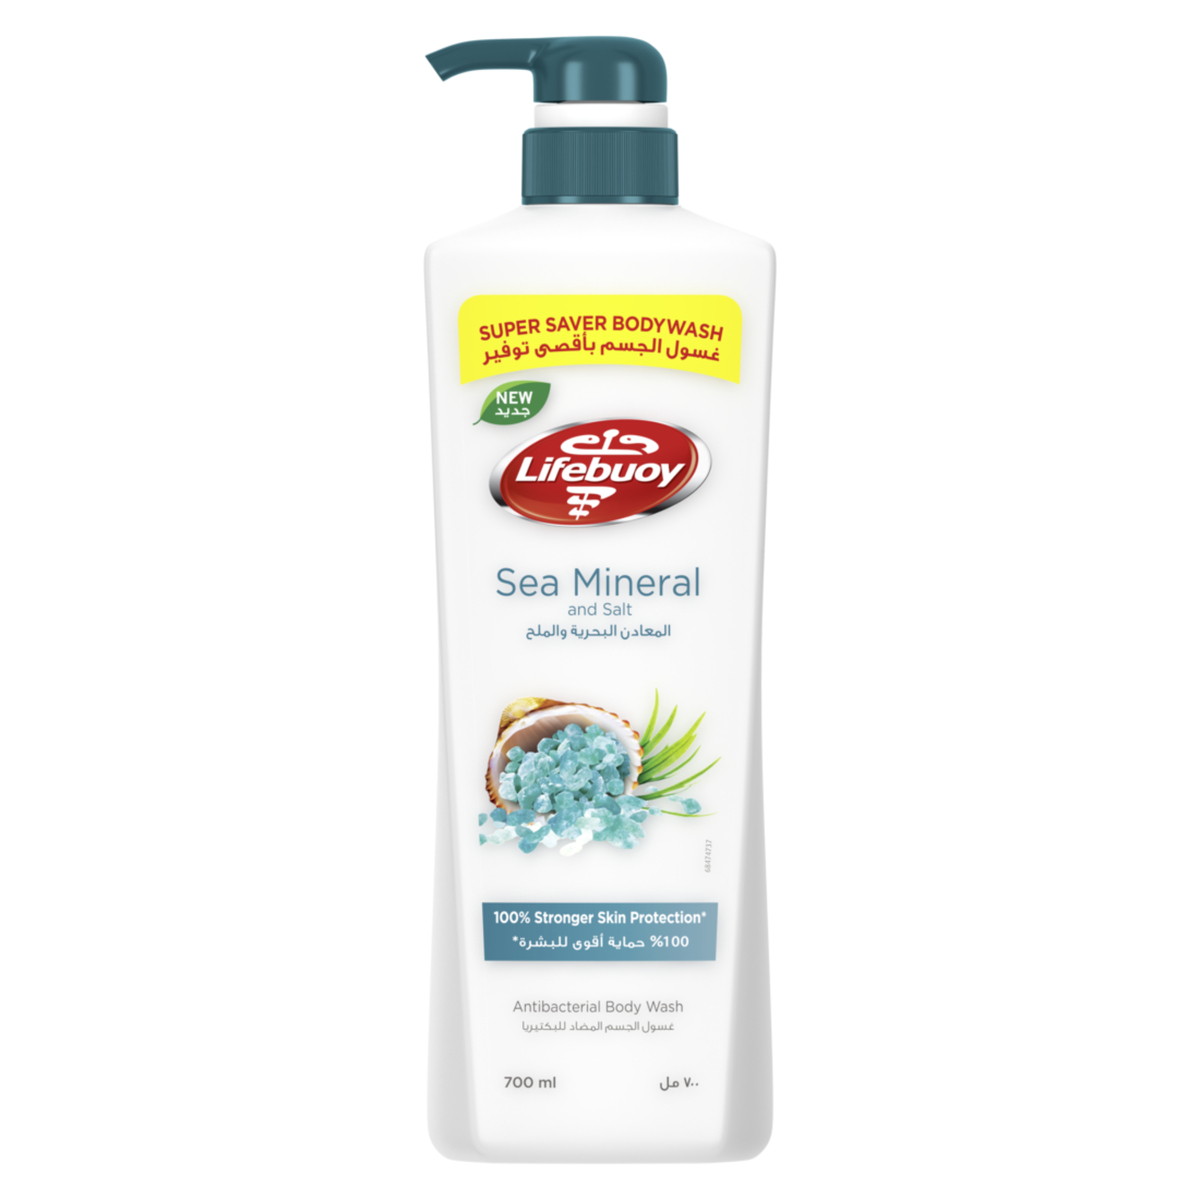 Lifebuoy Sea Mineral and Salt Bodywash, 700 ml